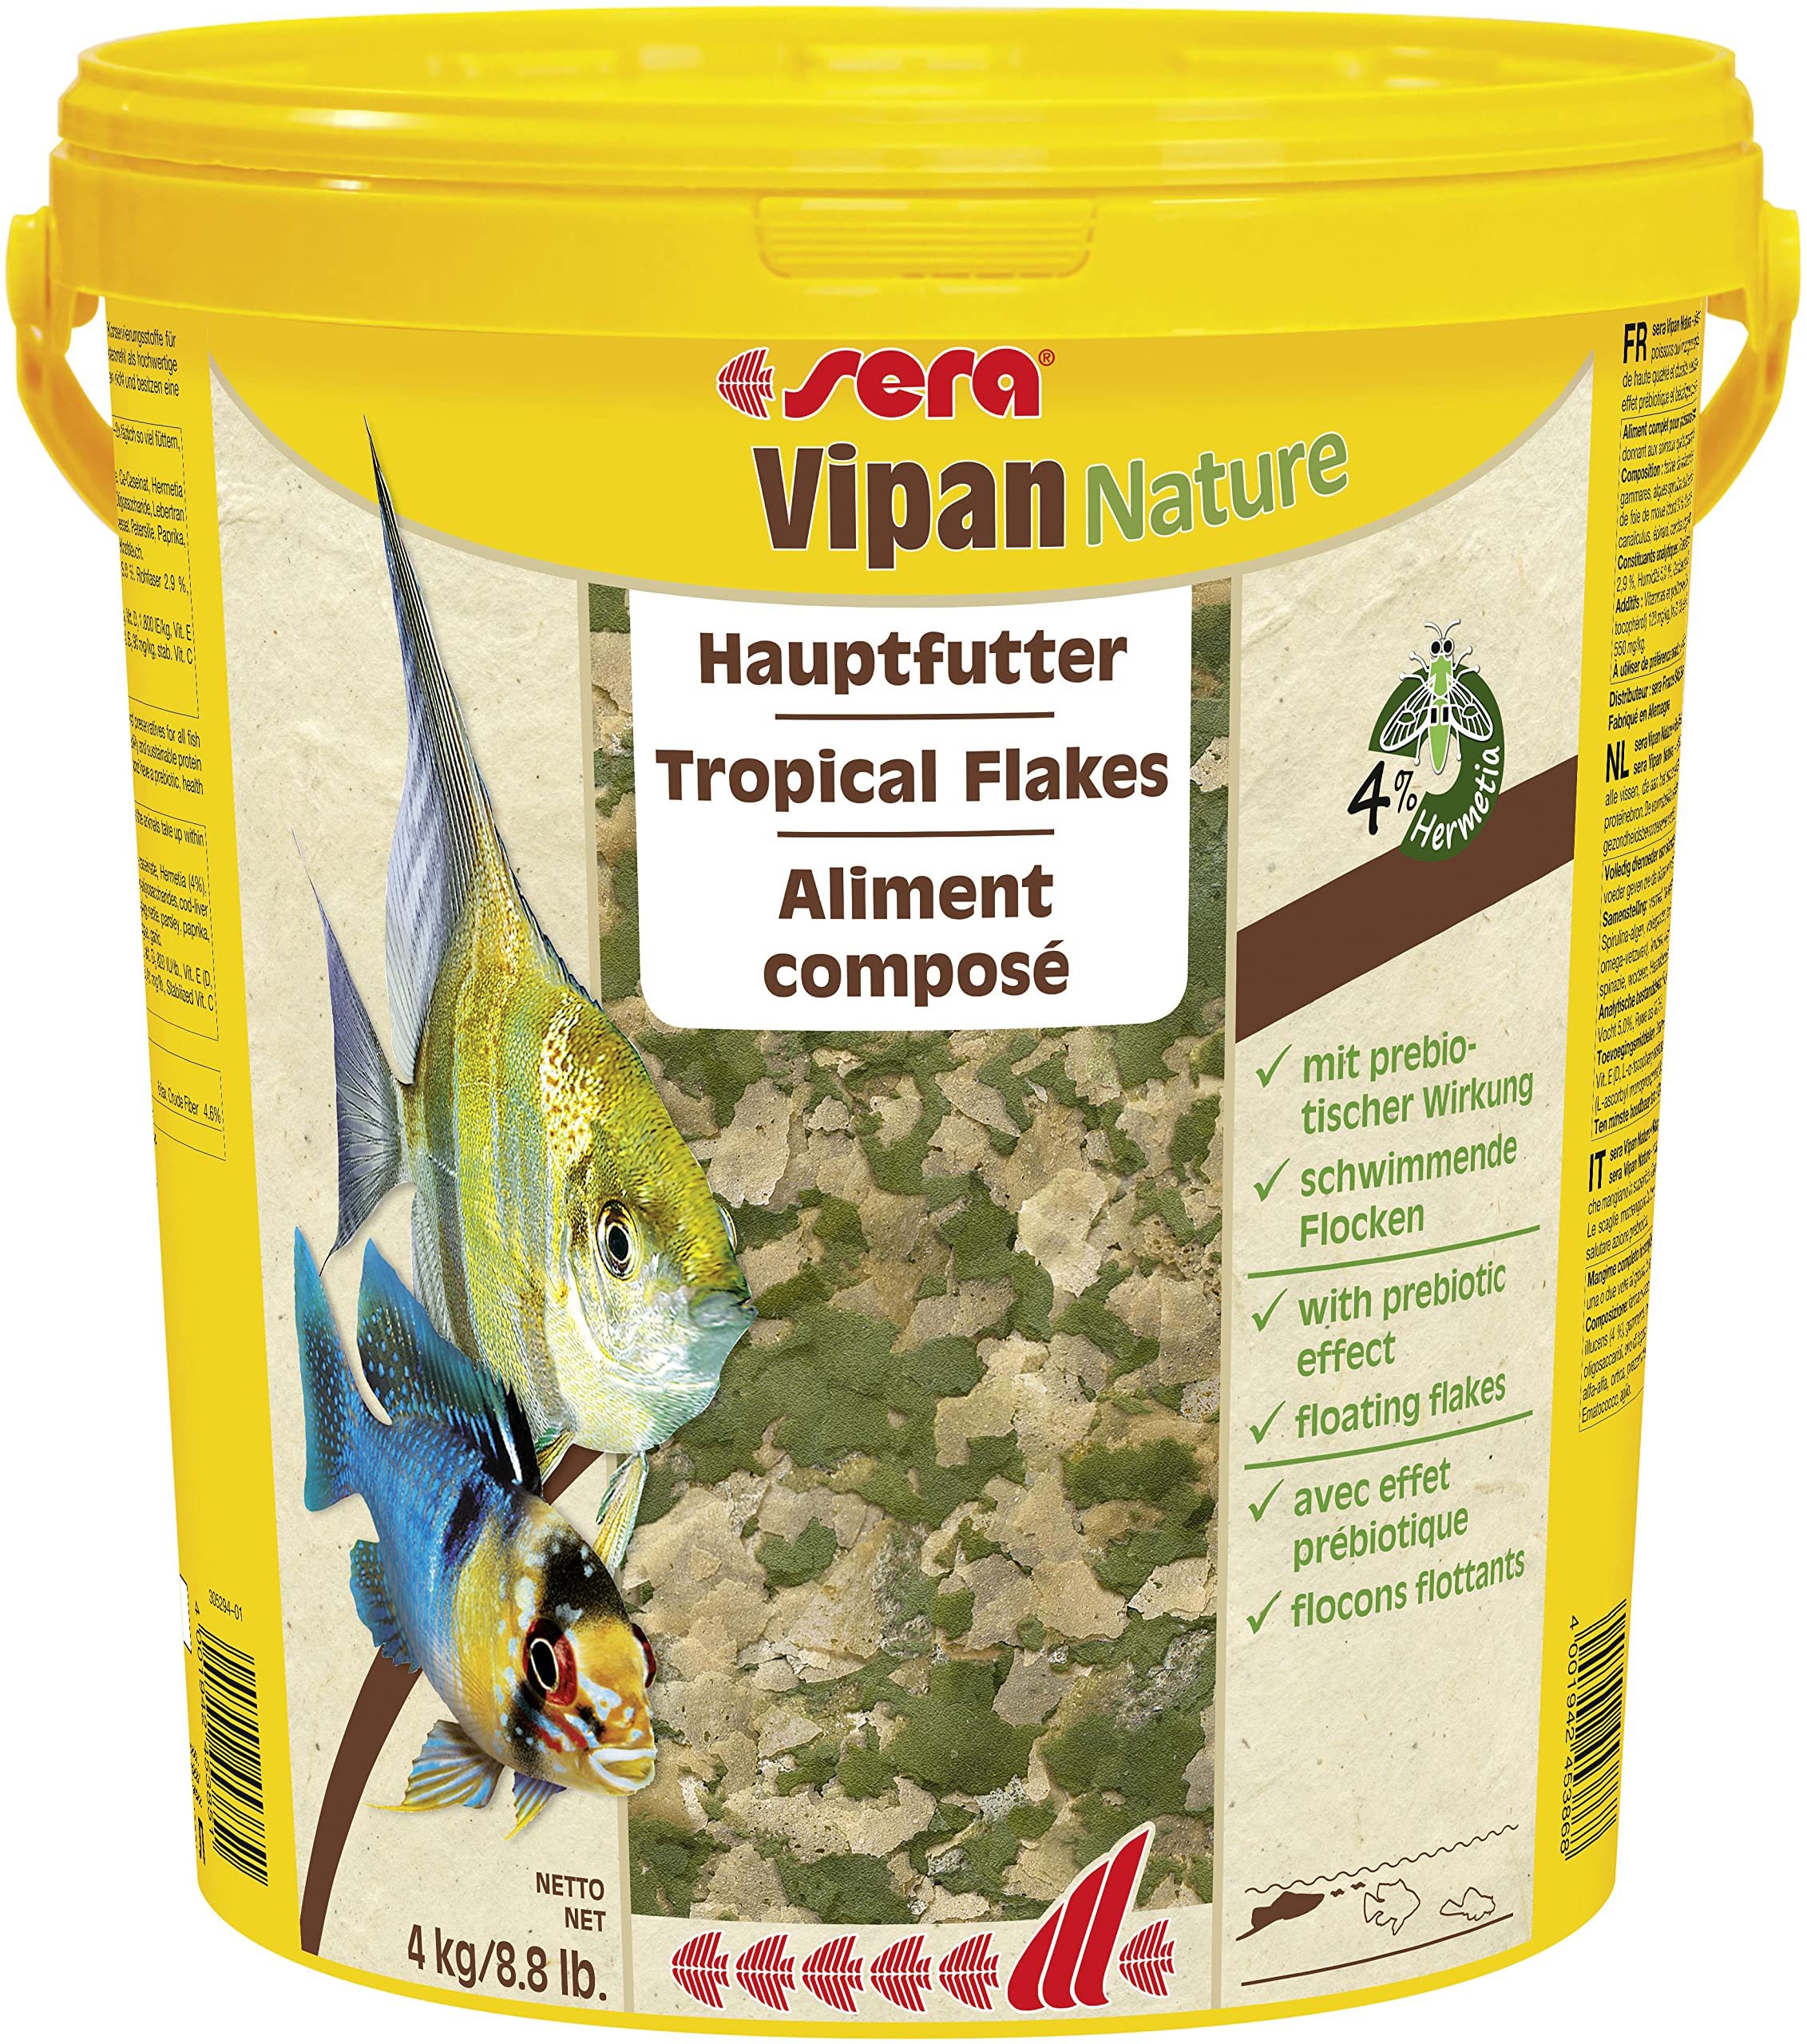 sera Vipan Nature 21 L (4 kg) - Hauptfutter mit 4% Insektenmehl und prebiotischer Wirkung, Flockenfutter fürs Aquarium, Fischfutter mit sehr hoher Futterverwertbarkeit und somit weniger Algen